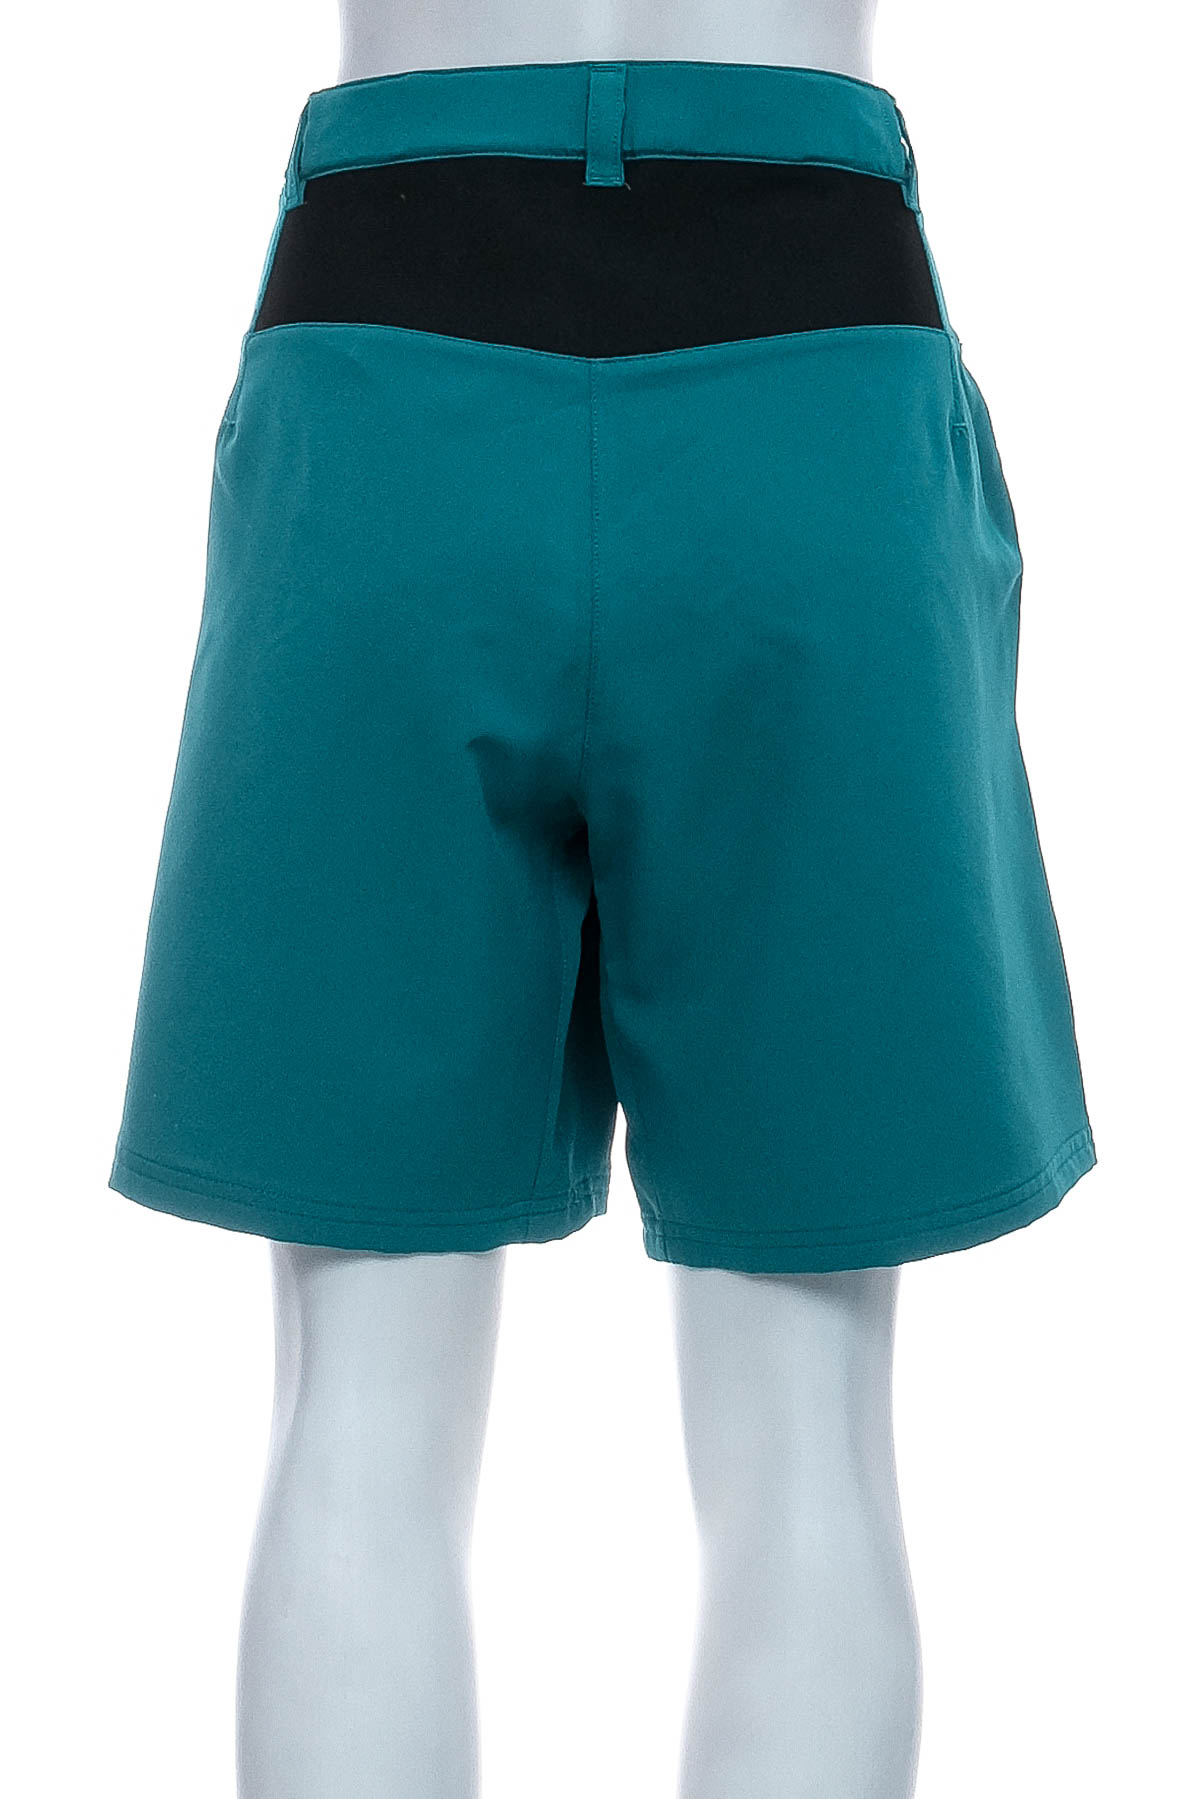 Female shorts - CMP - 1